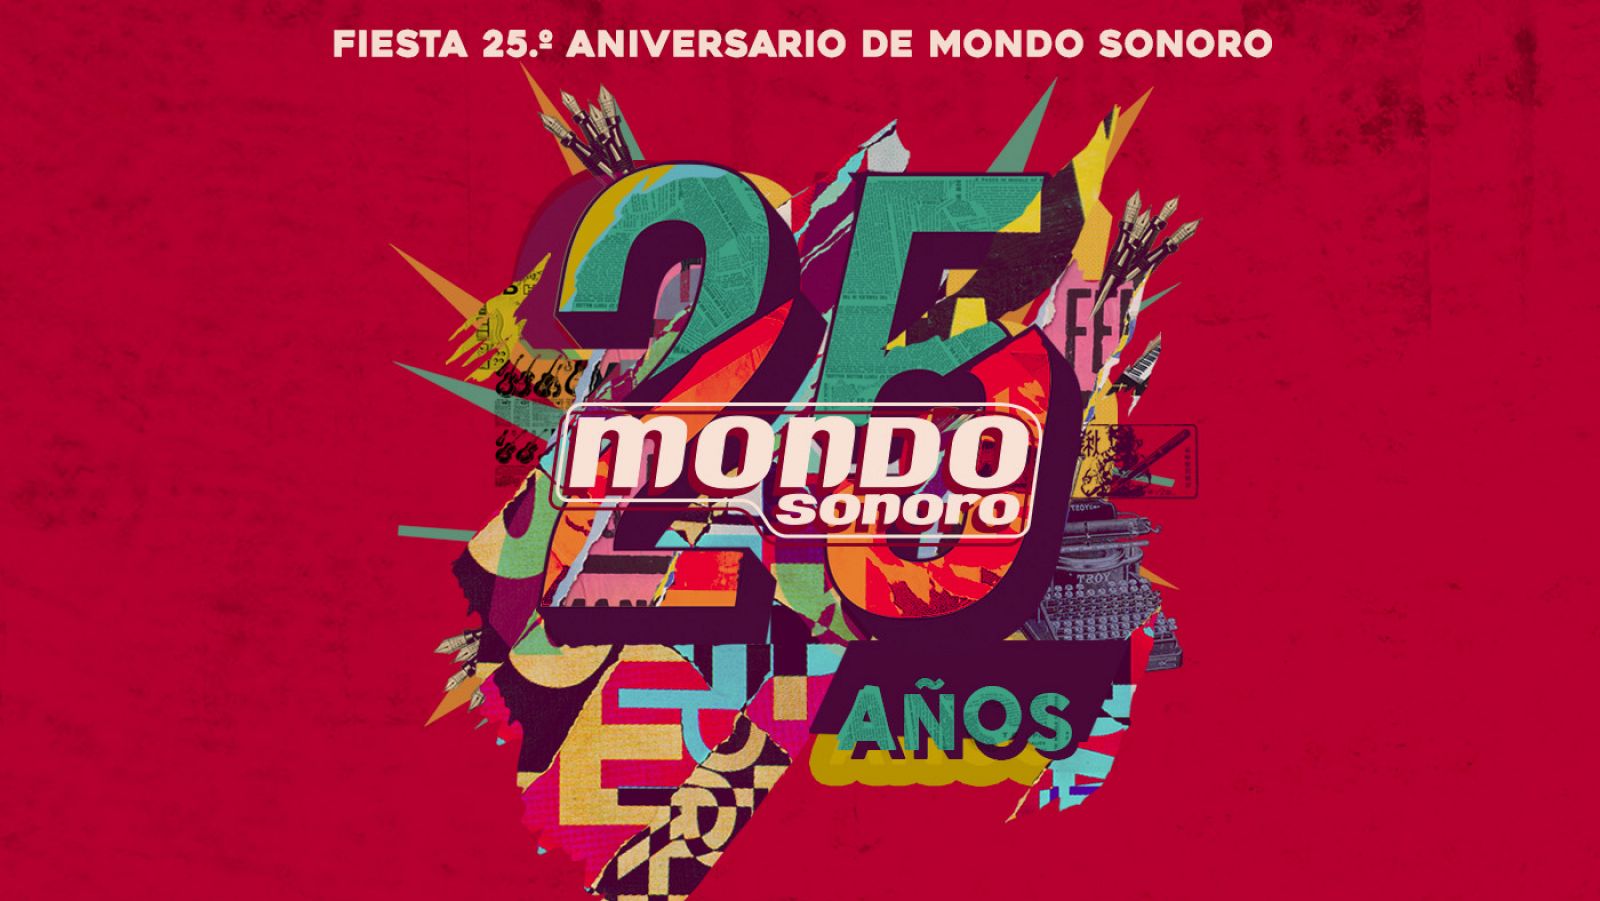 La Fiesta 25.º aniversario de Mondo Sonoro se celebra el 7 de noviembre